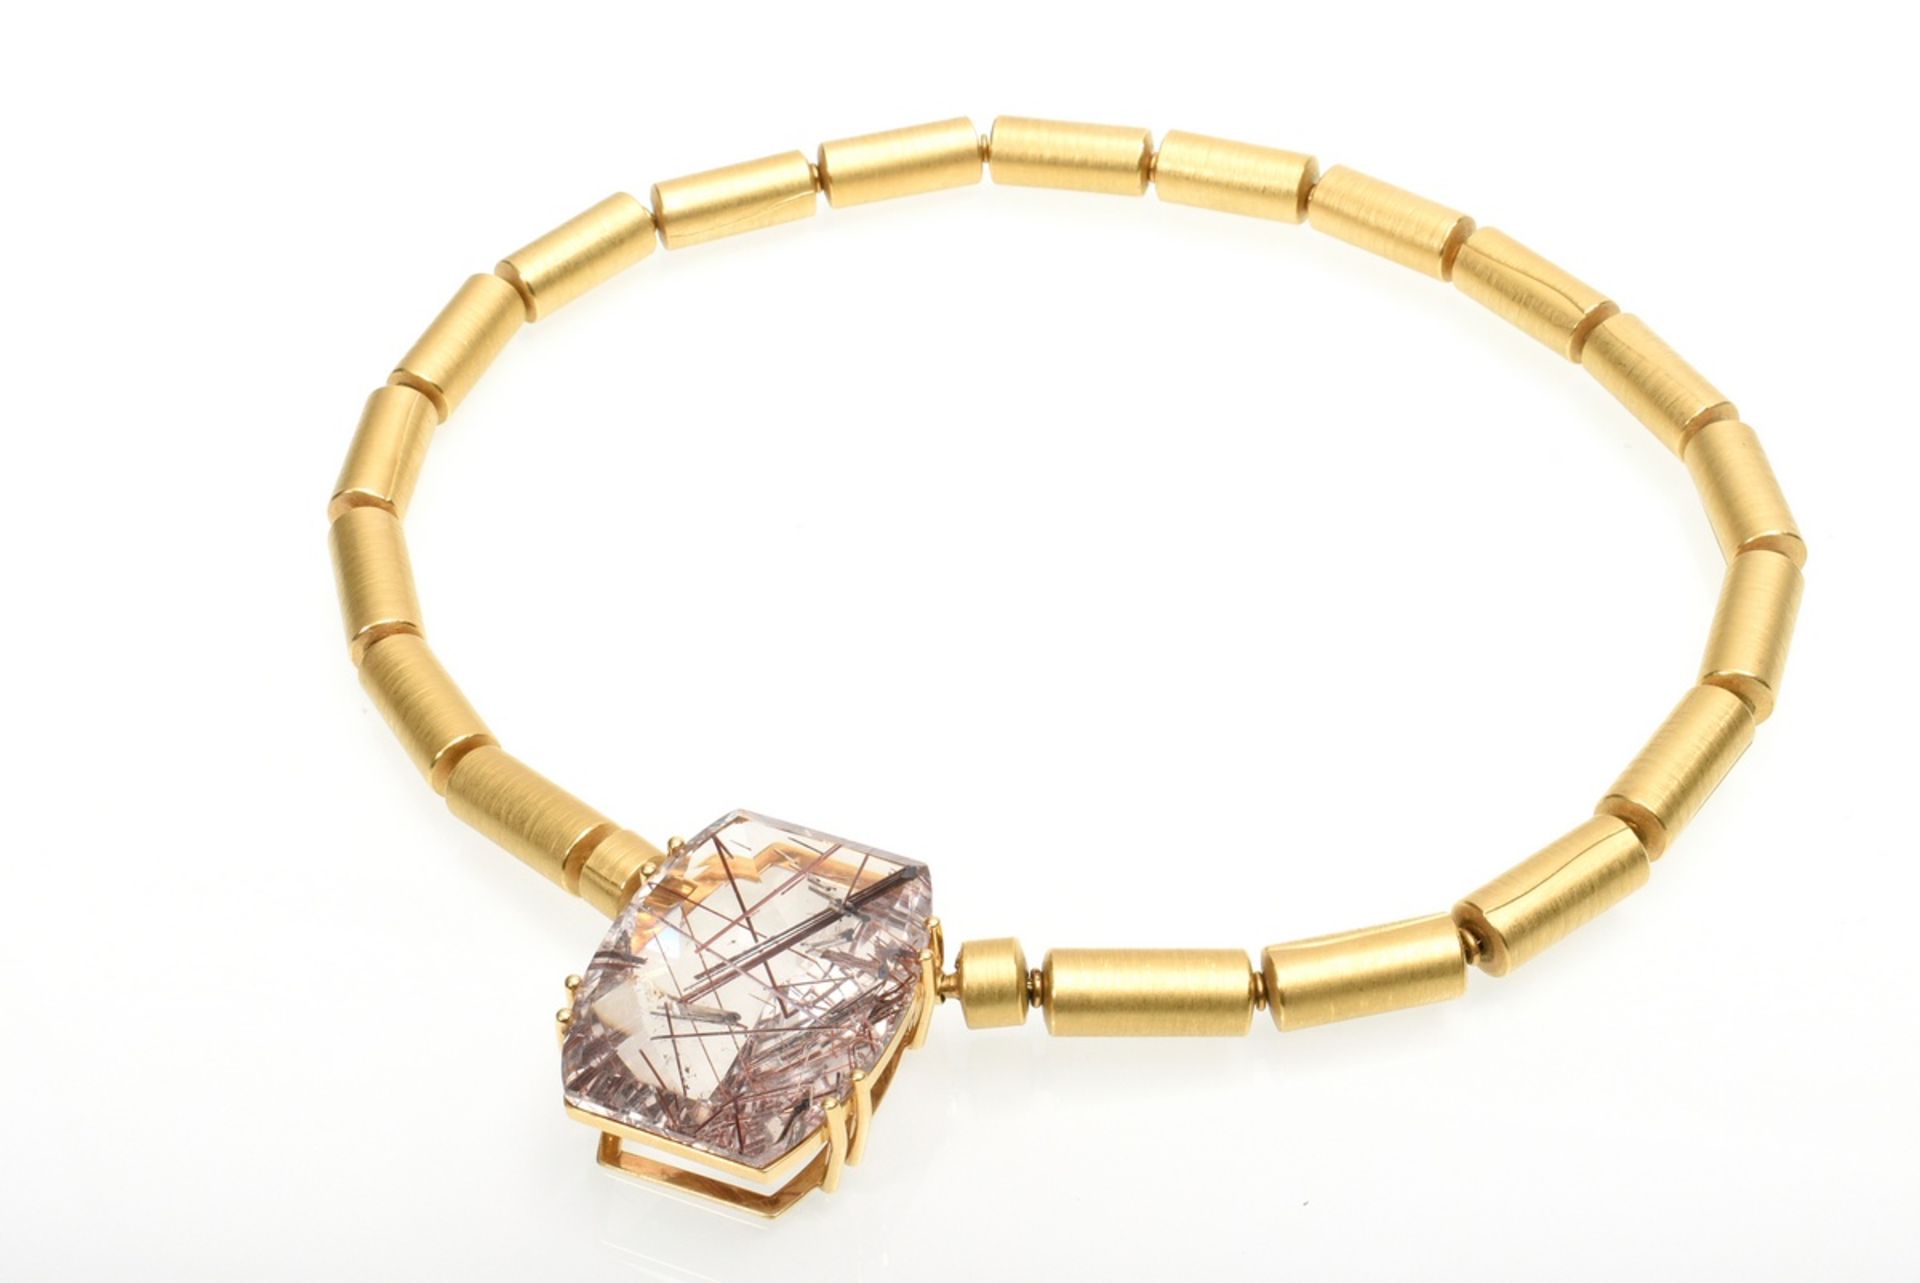 4 pieces avant-garde GG 900 tube necklace (68,8g, l. 44cm) with 3 different clasps: rutile quartz p - Image 9 of 11